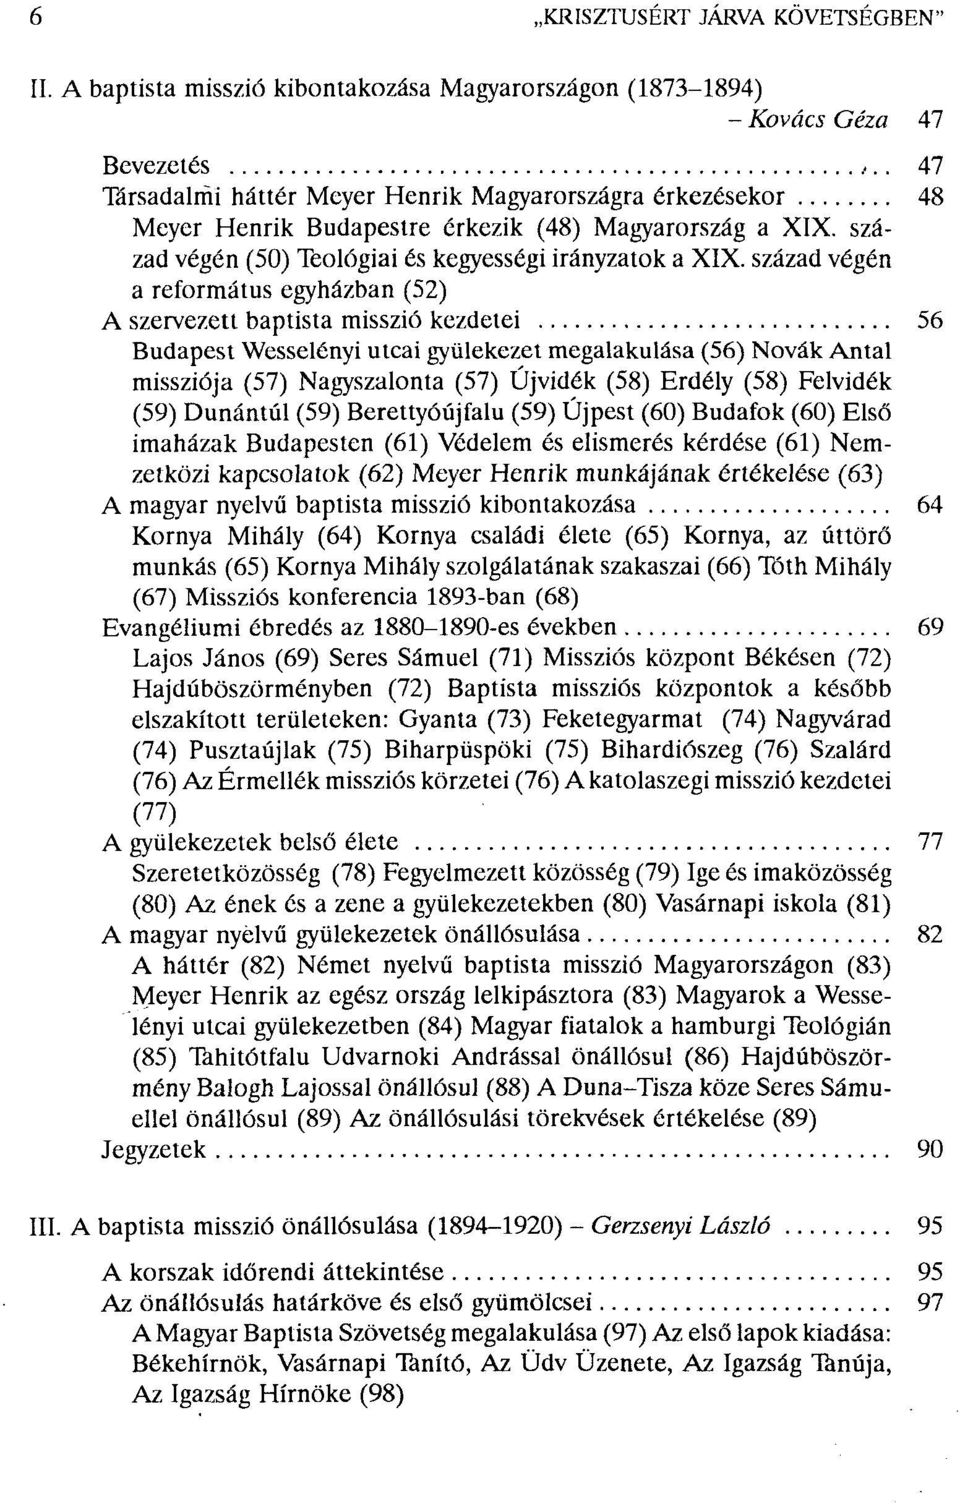 Magyarország a XIX. század végén (50) Teológiai és kegyességi irányzatok a XIX.